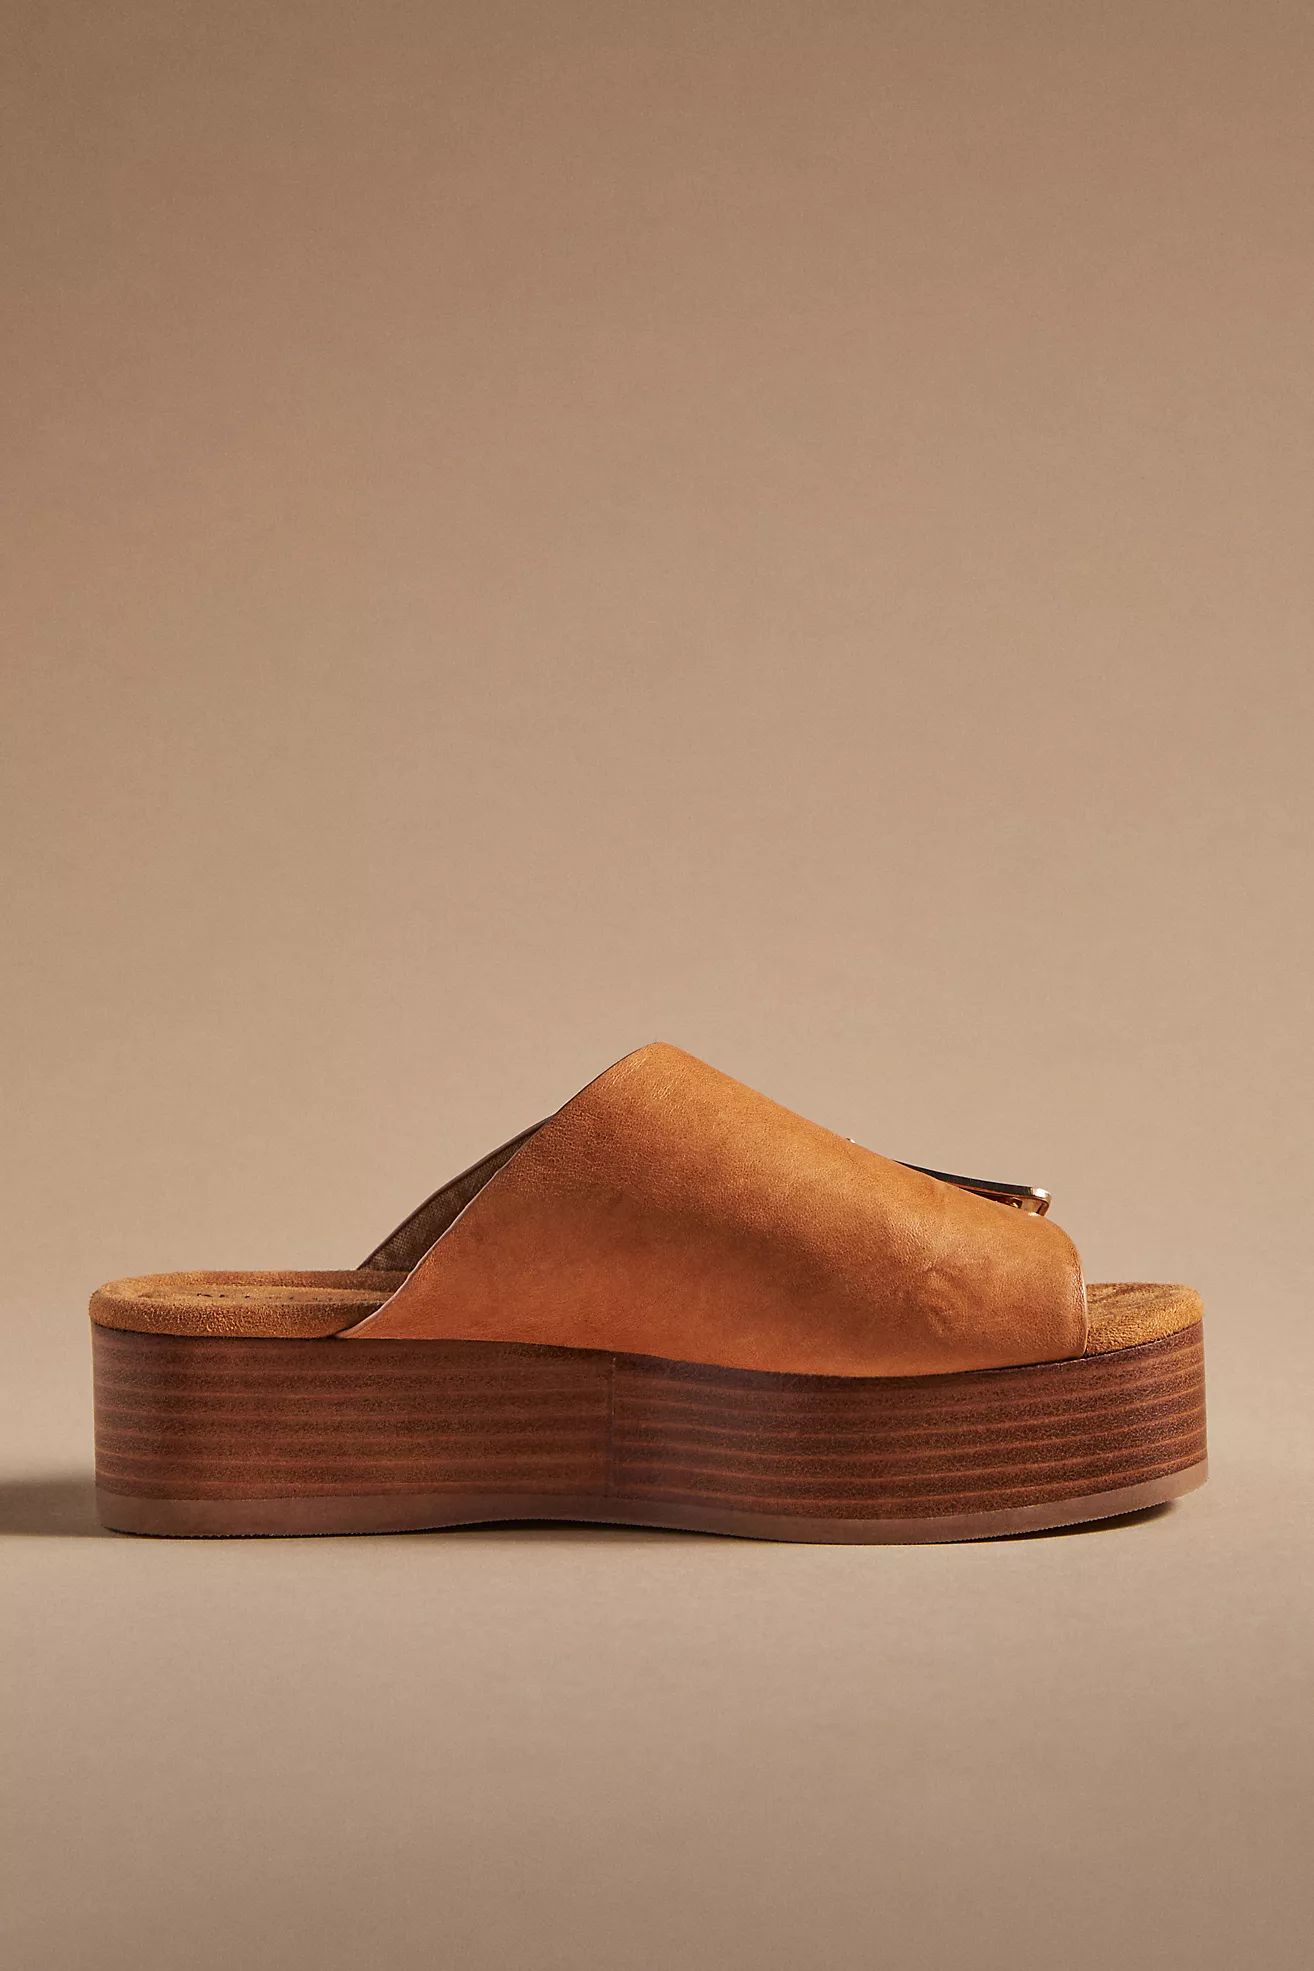 Kelsi Dagger Brooklyn Dover Platform Sandals | Anthropologie (US)